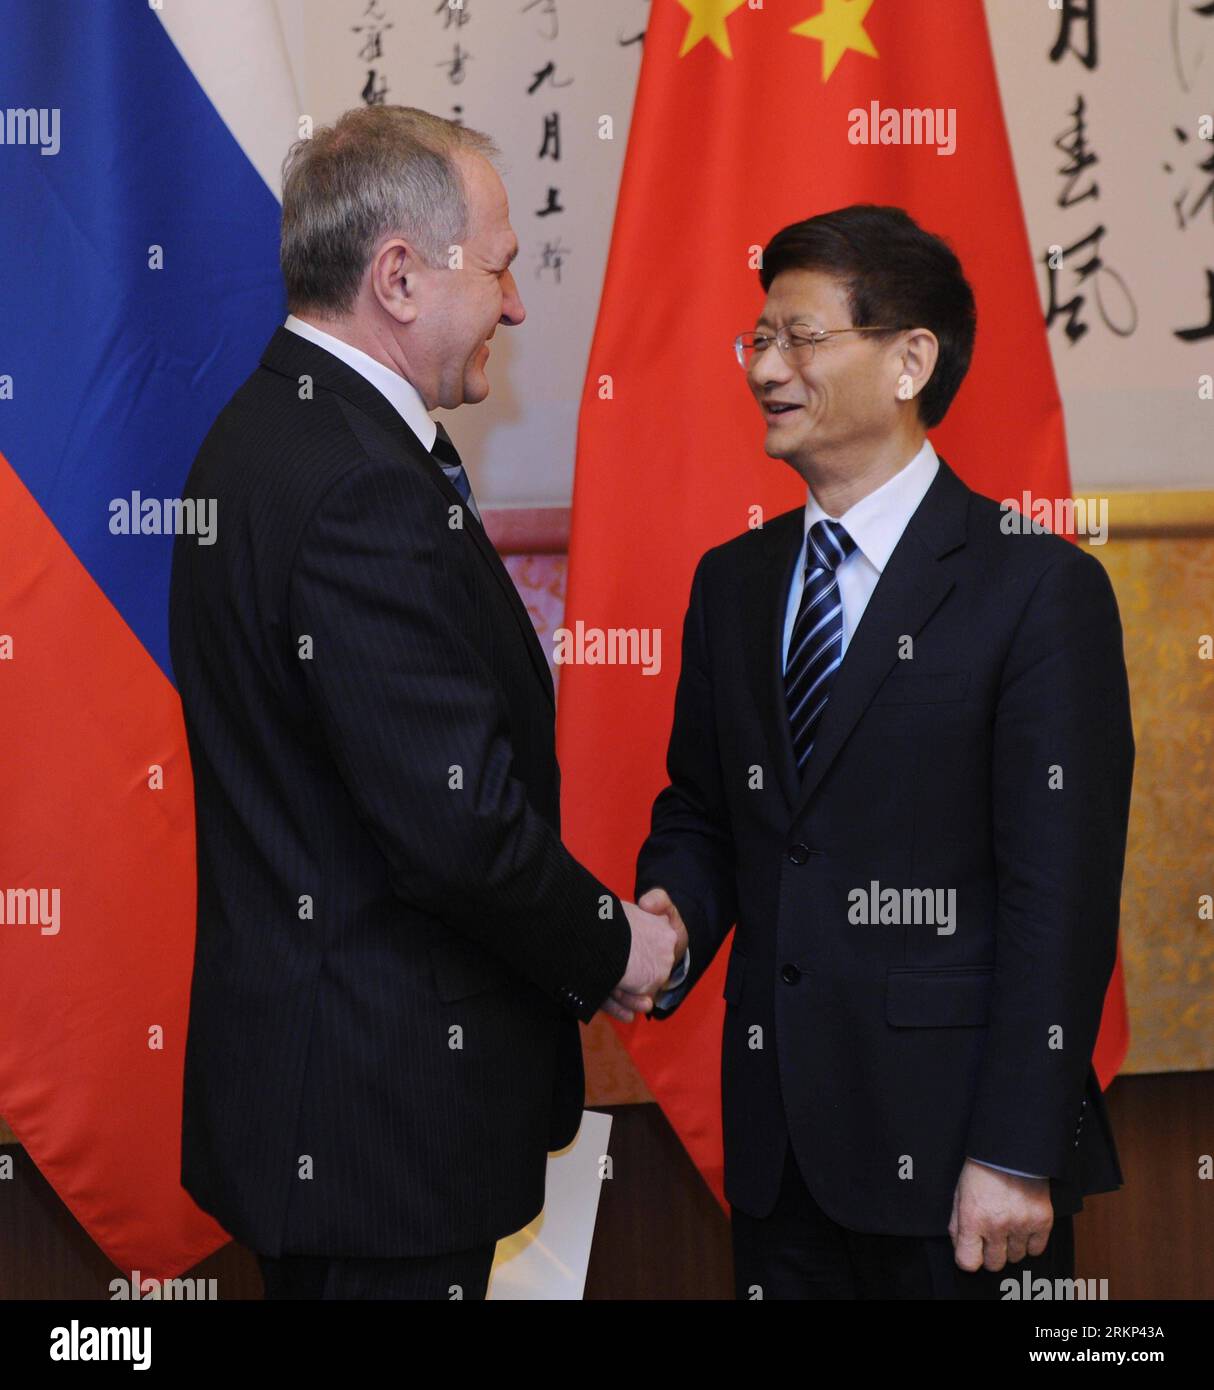 Número de archivo: 57888877 Fecha: 11.04.2012 Copyright: Imago/Xinhua (120411) -- BEIJING, April 11, 2012 (Xinhua) -- la consejera de Estado de China, Meng Jianzhu, se da la mano al primer secretario adjunto del Consejo de Seguridad de Rusia, Vladimir Ivanovich Bulavin, quien está aquí para asistir a la séptima reunión de secretarios del consejo de Seguridad de la Organización de Cooperación de Shanghái (SCO) en Beijing, capital de China, el 11 de abril de 2012. (Xinhua/Zhang Duo) (zkr) CHINA-BEIJING-MENG JIANZHU-RUSSIA-BULAVIN-MEET (CN) PUBLICATIONxNOTxINxCHN POLITIK xda x0x 2012 cuadrante 57888877 Fecha 11 04 2012 Copyright Im Foto de stock